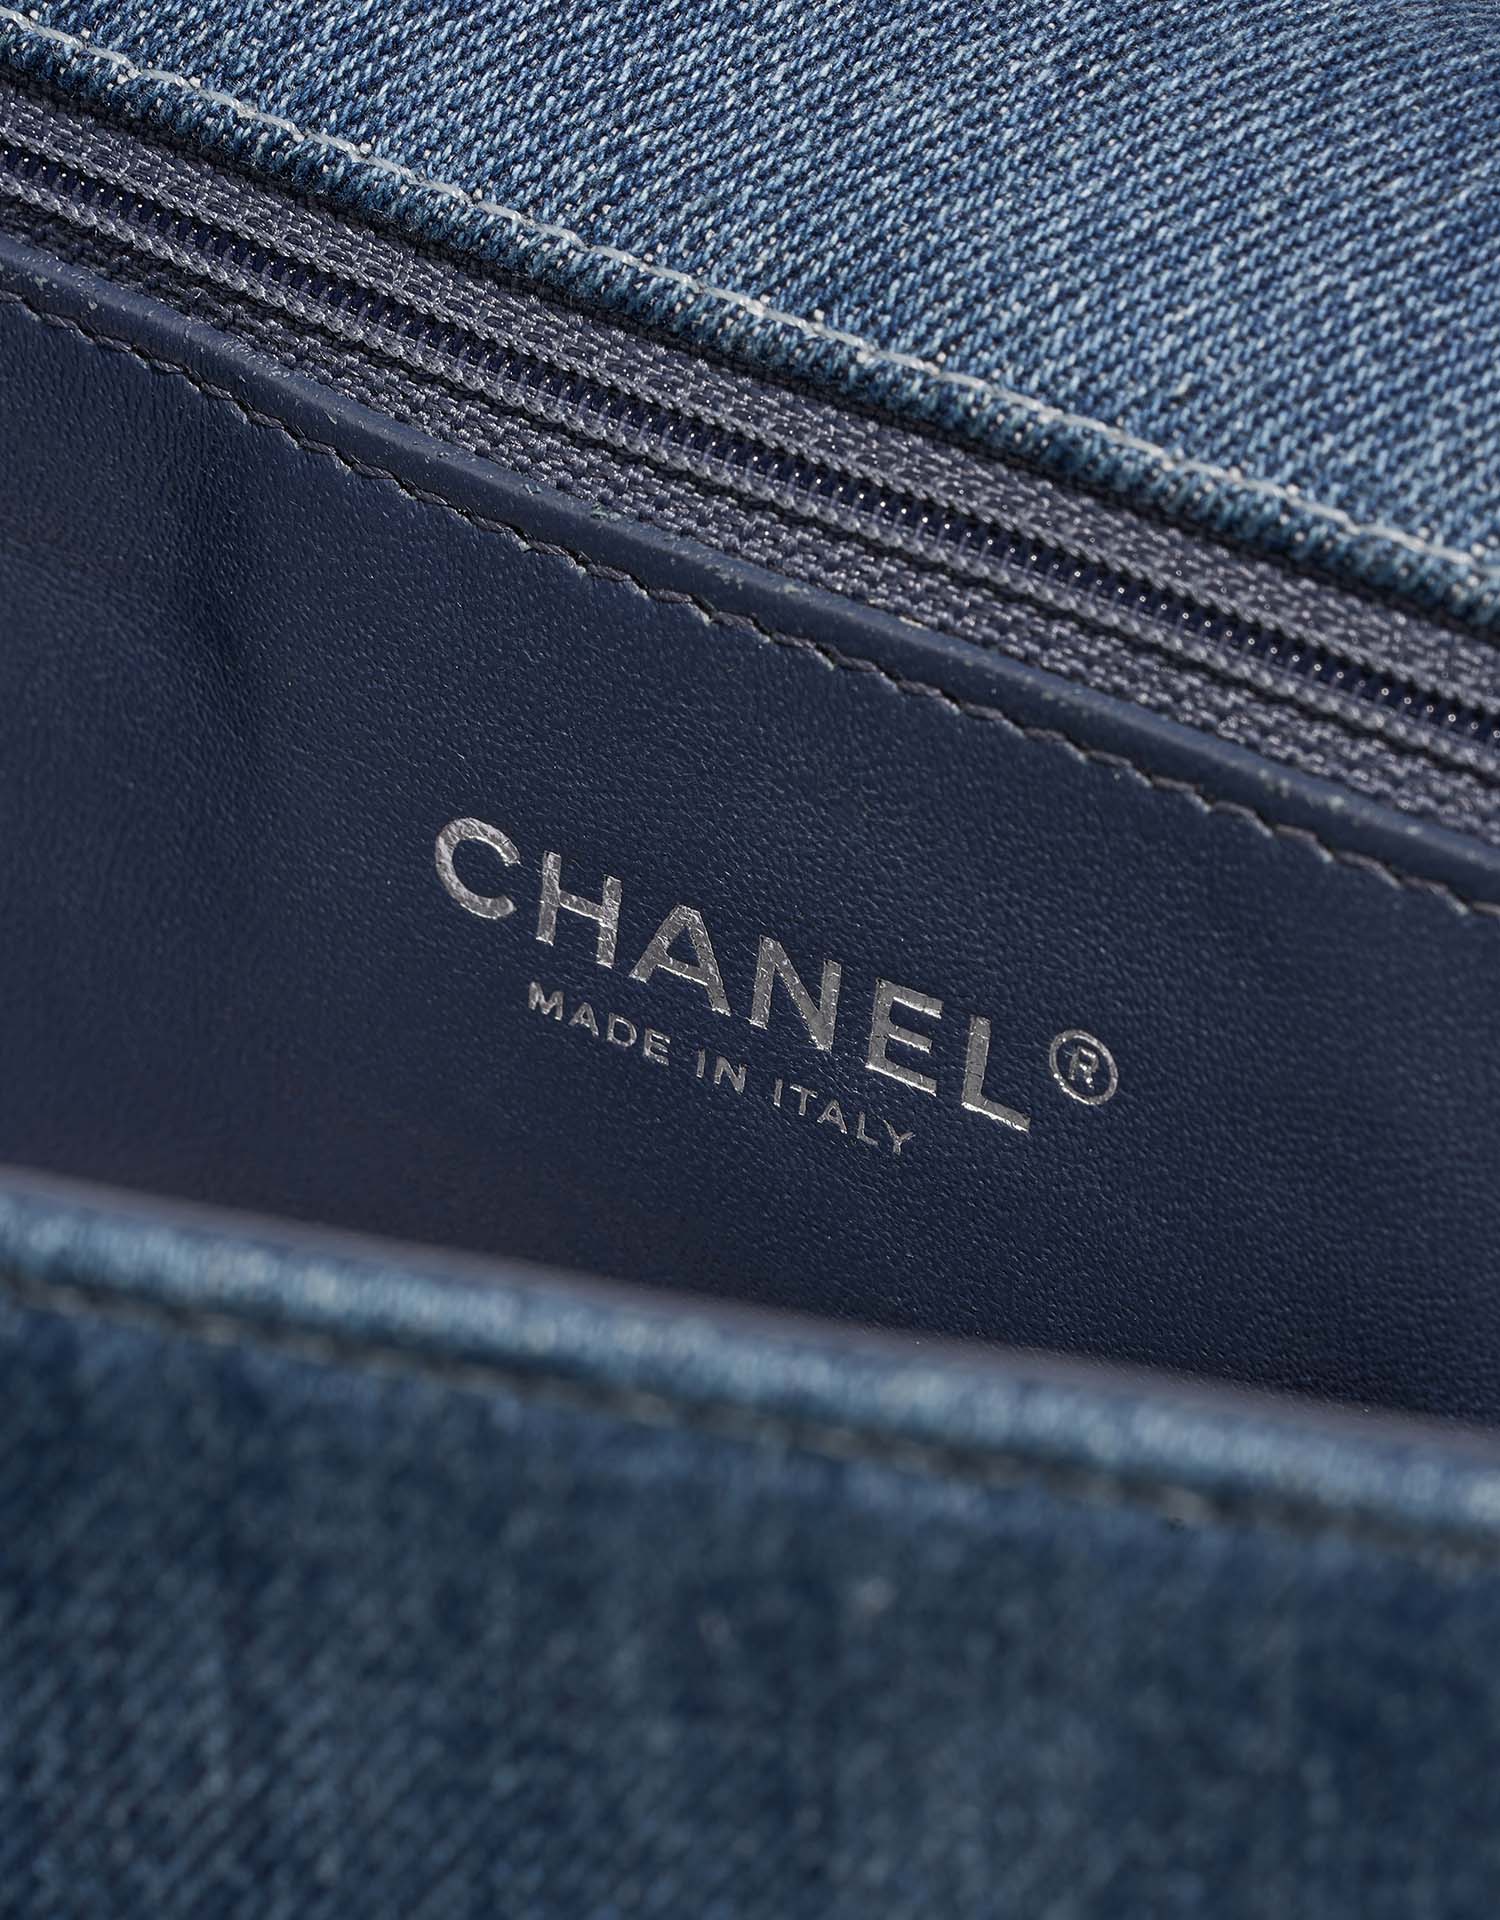 Chanel Boy Large Blue Logo | Verkaufen Sie Ihre Designer-Tasche auf Saclab.com